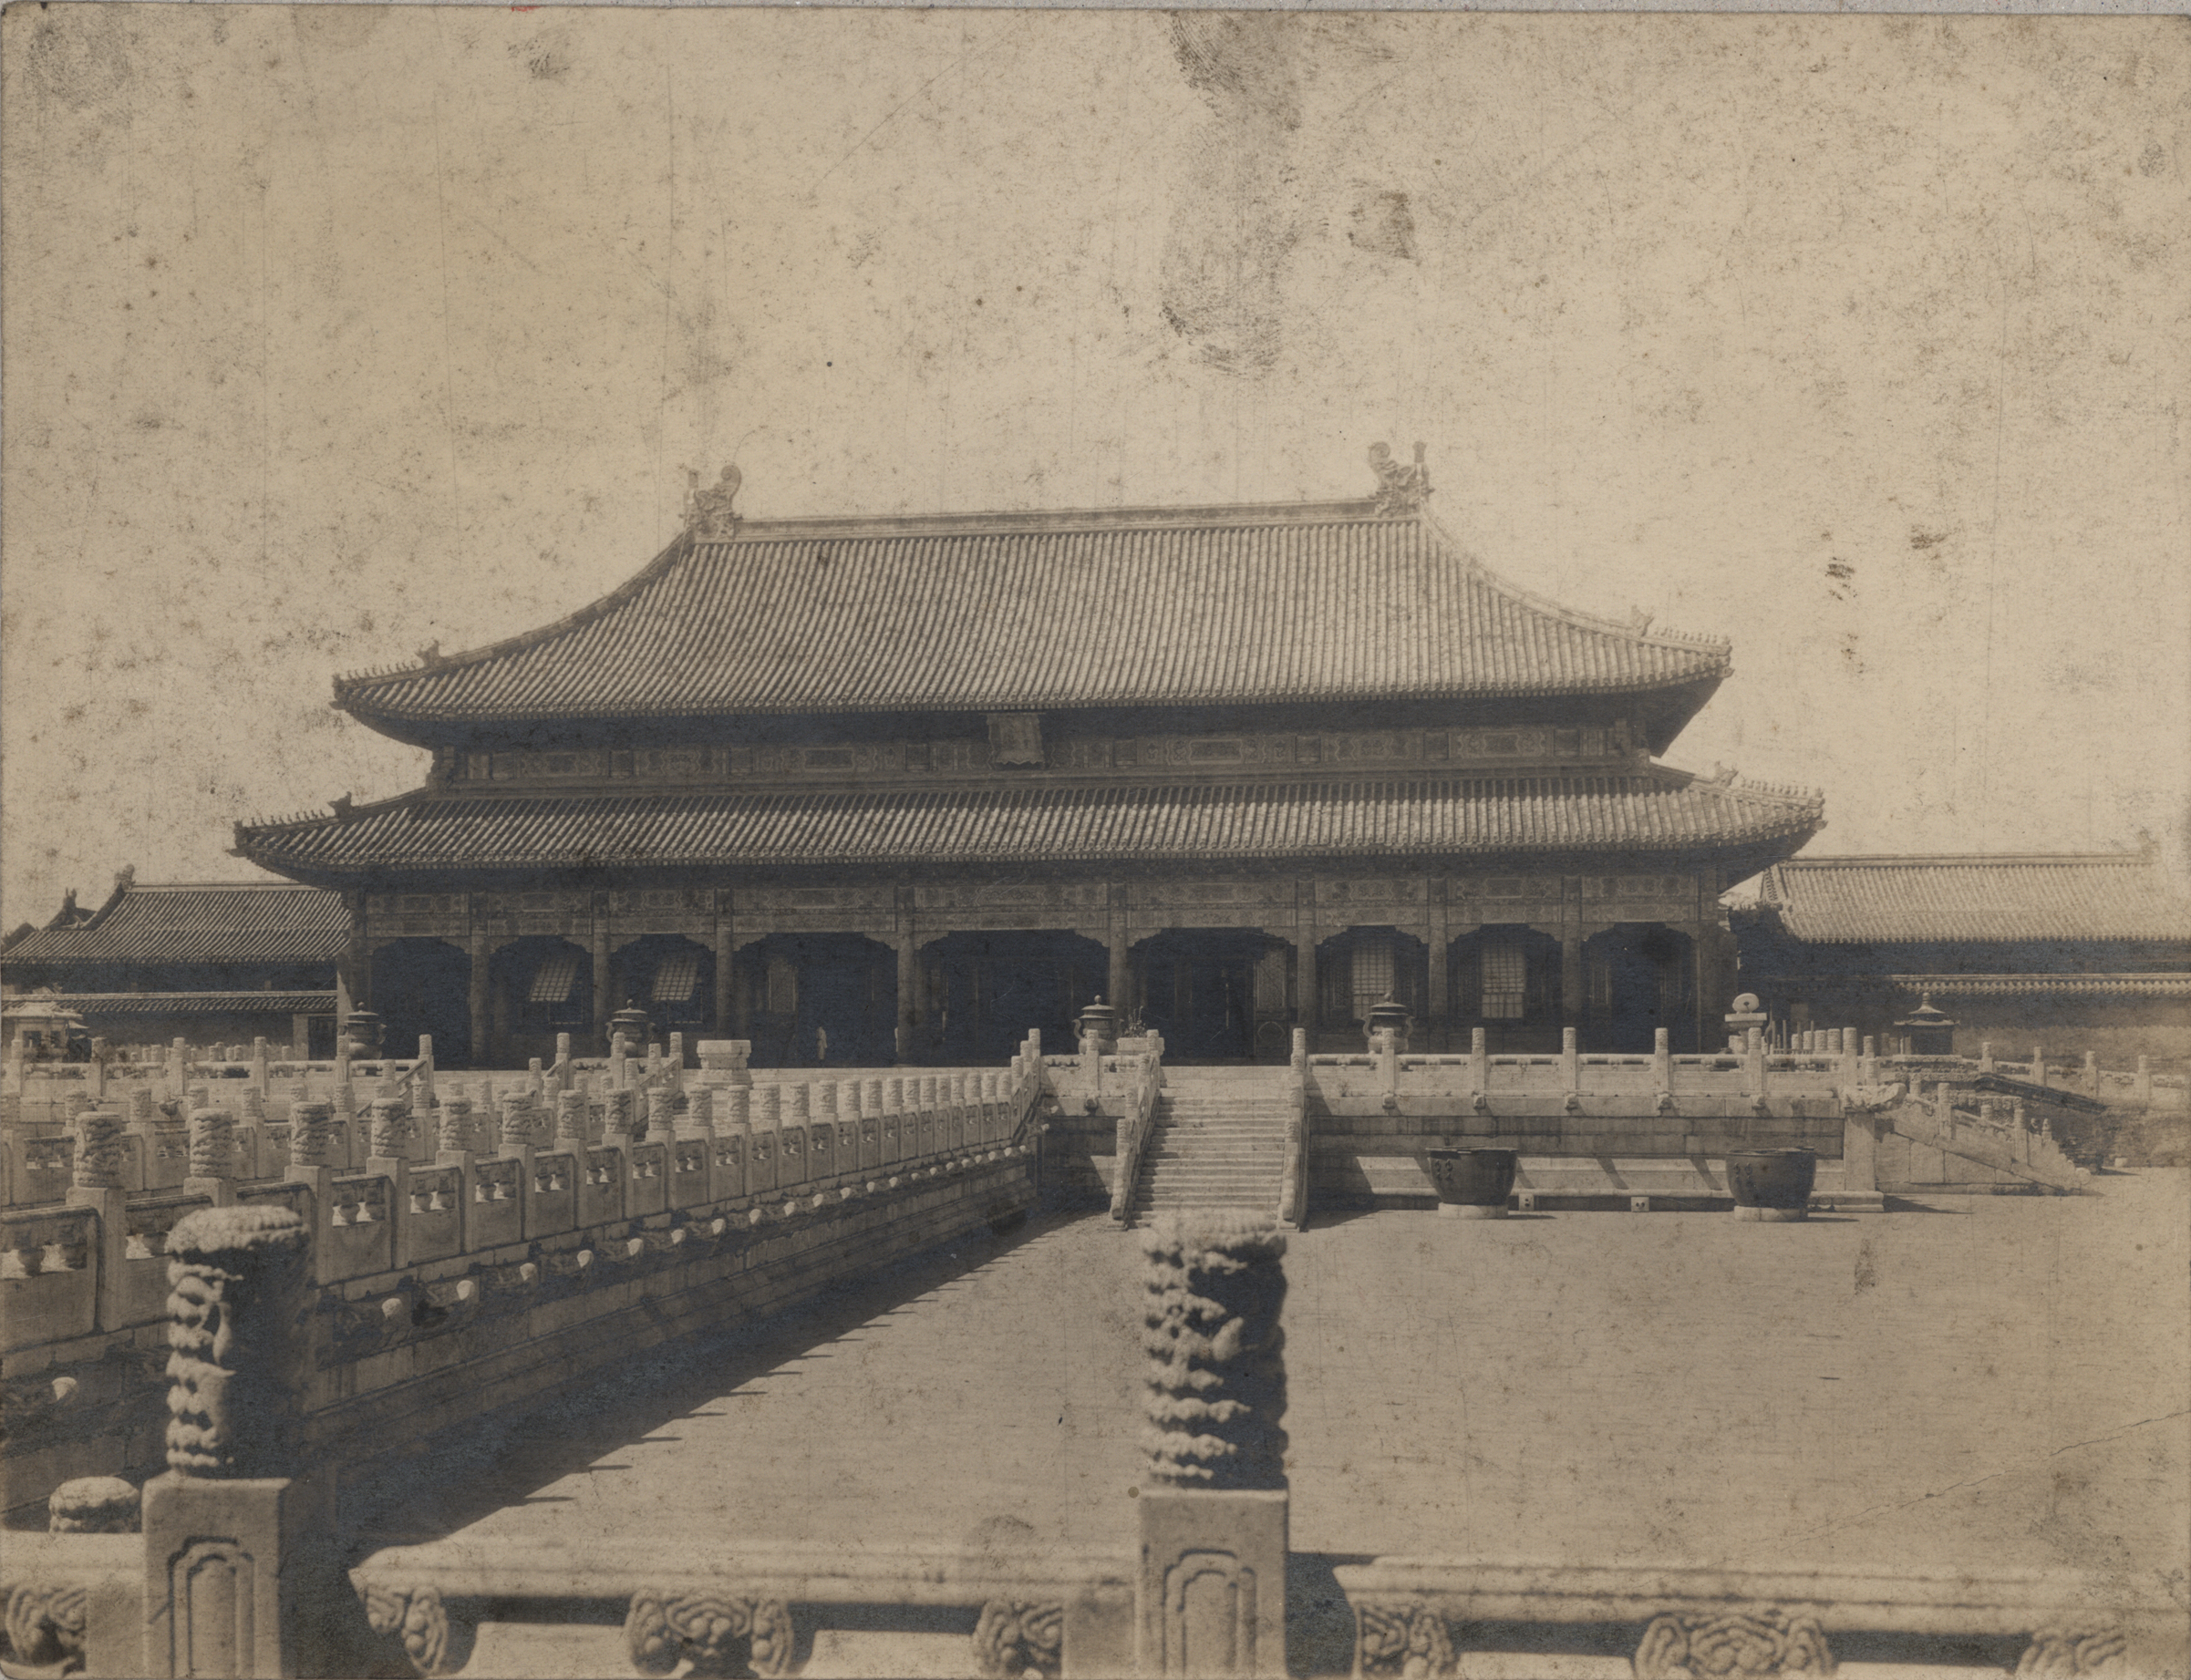 The Qianqinggong Palace